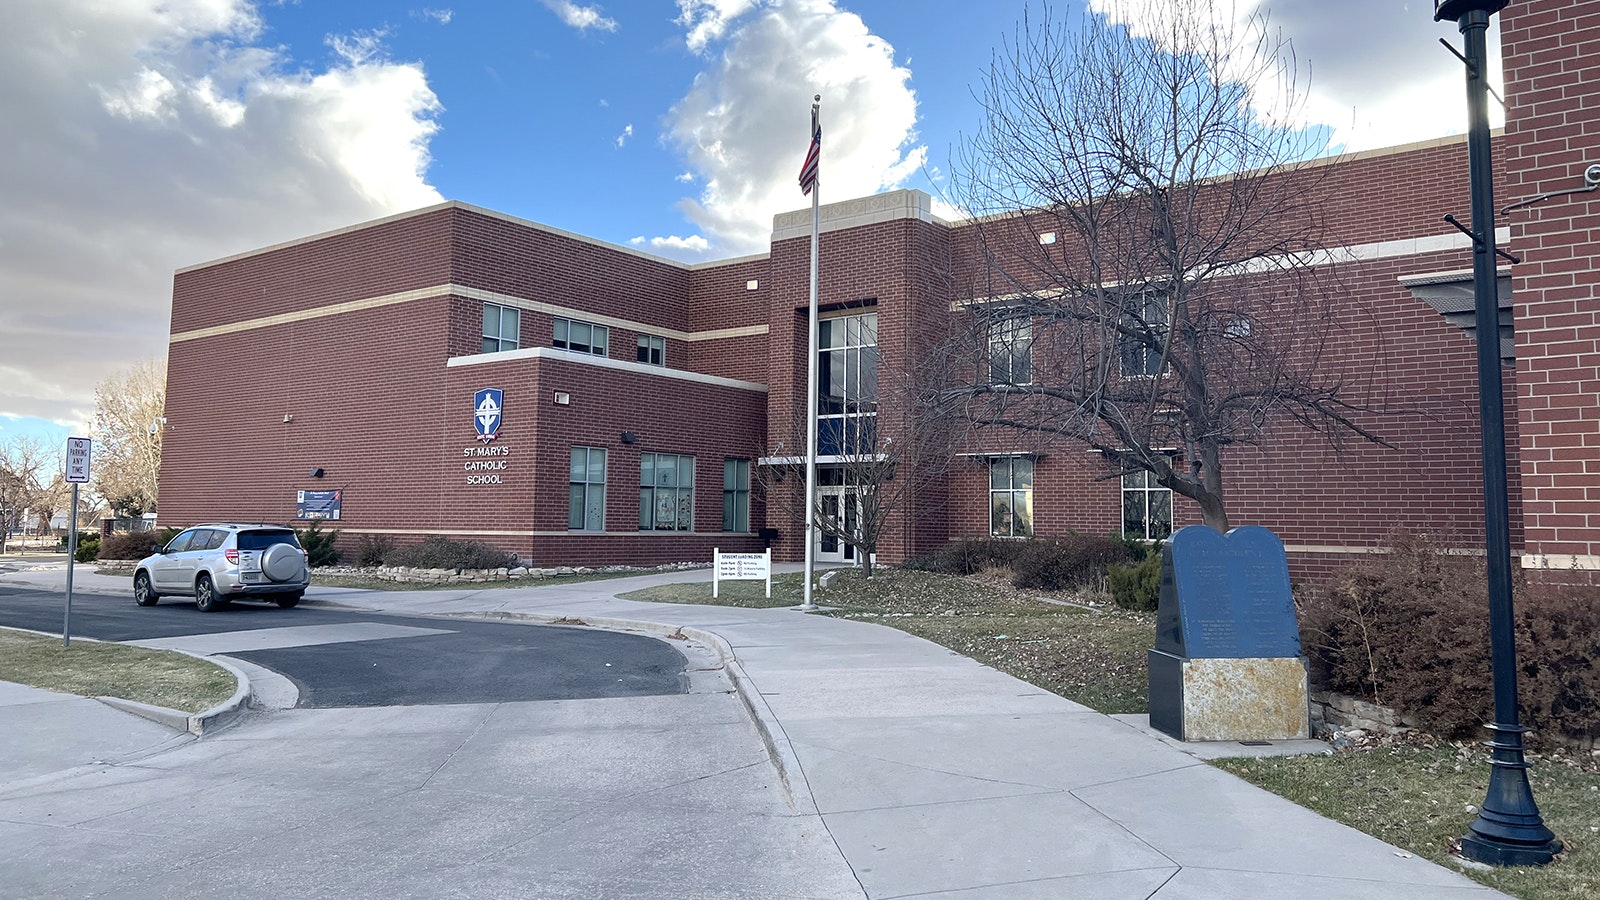 St. Mary's Catholic School in Cheyenne.